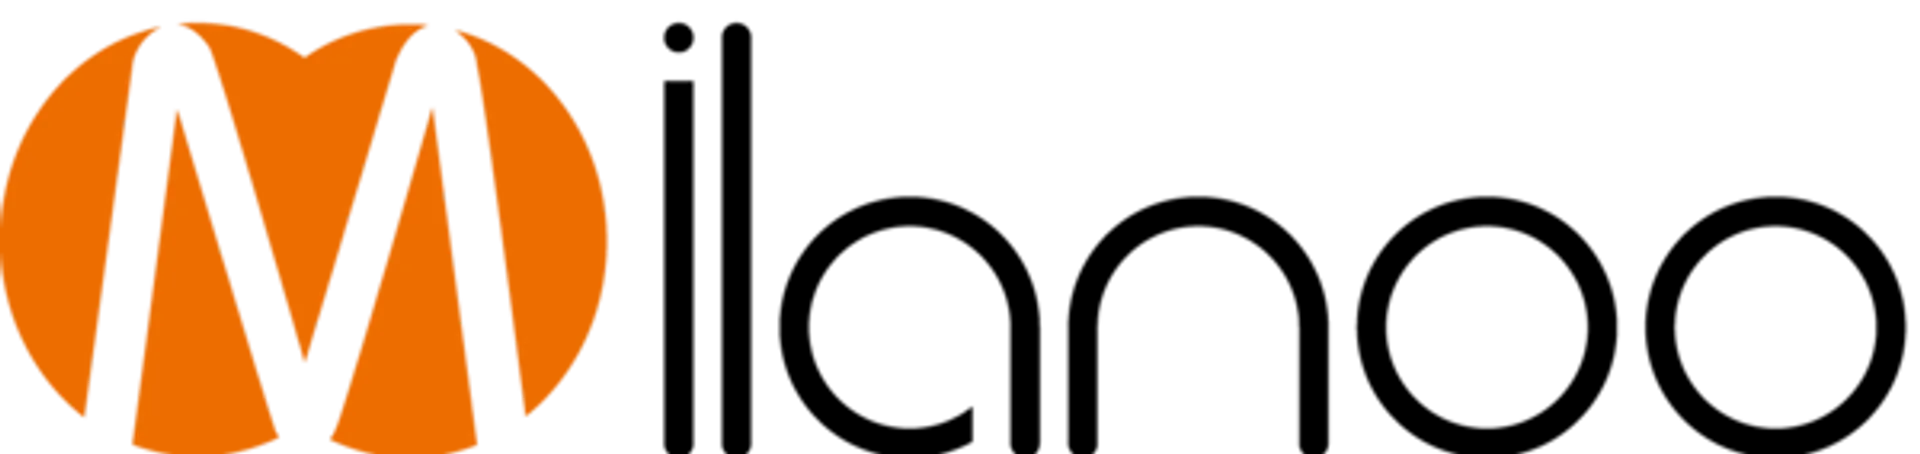 MILANOO logo